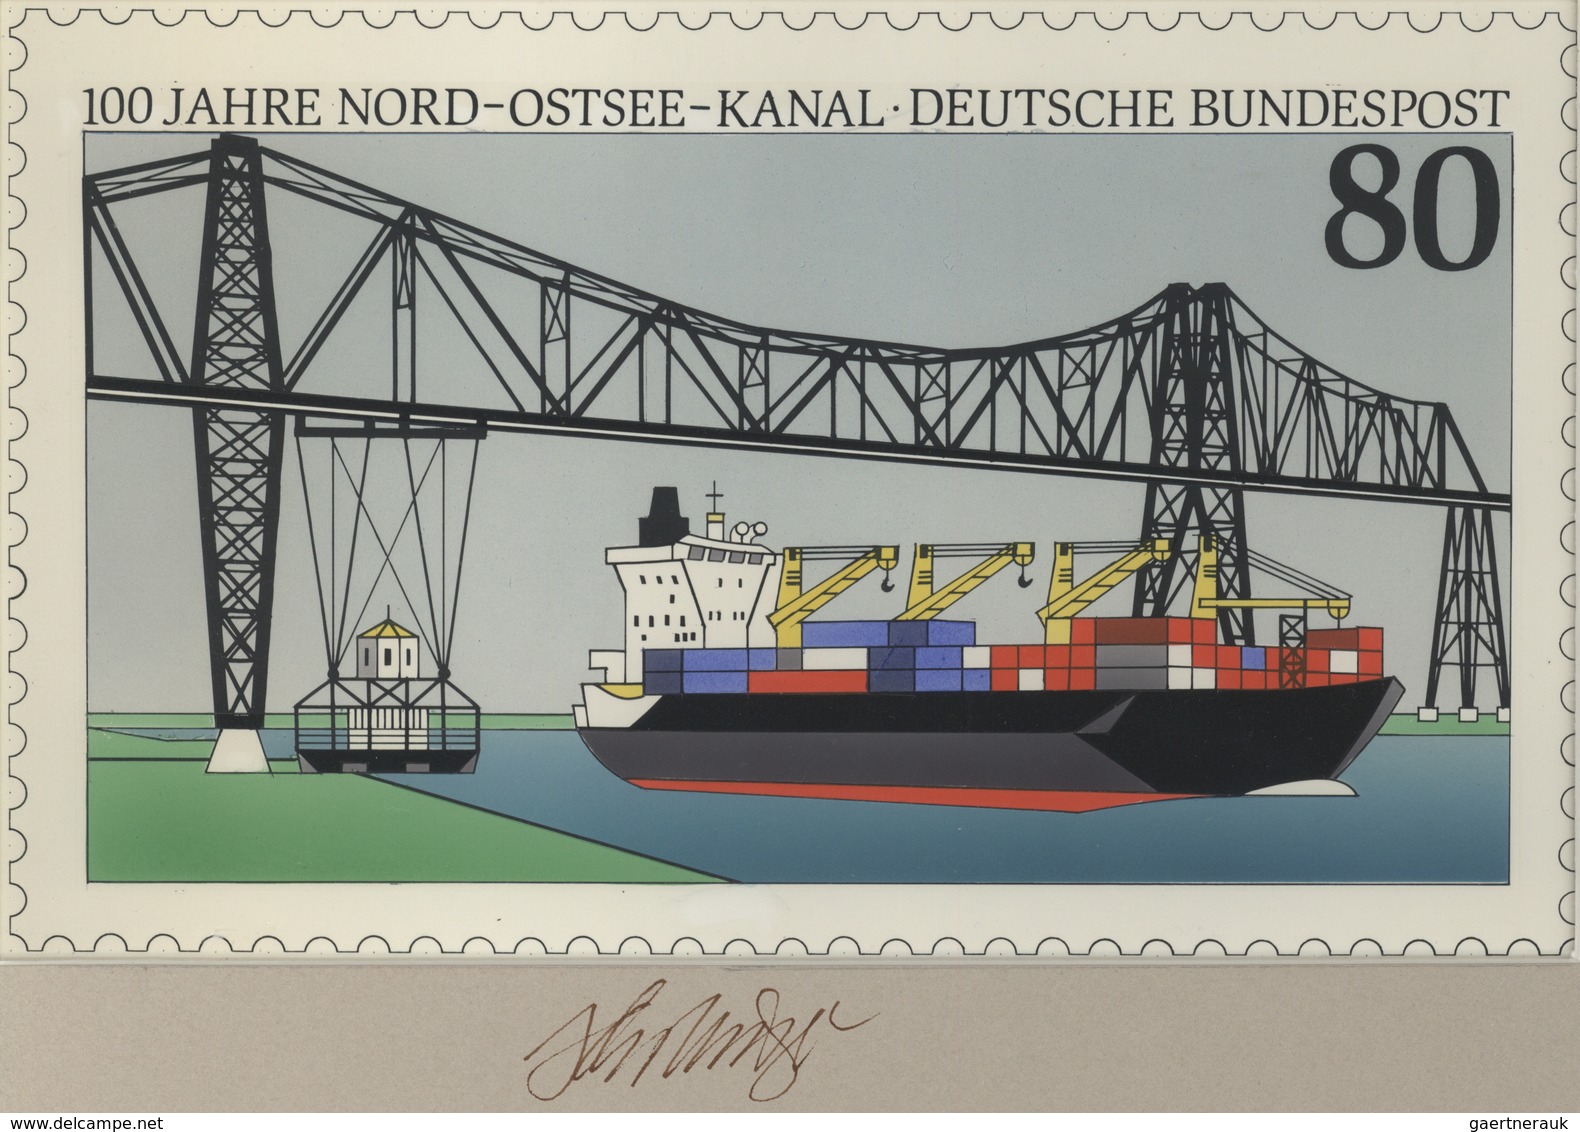 Thematik: Schiffe-Handelsschiffe / Ships-merchant Ships: 1992, Bund, Nicht Angenommener Künstlerentw - Boten